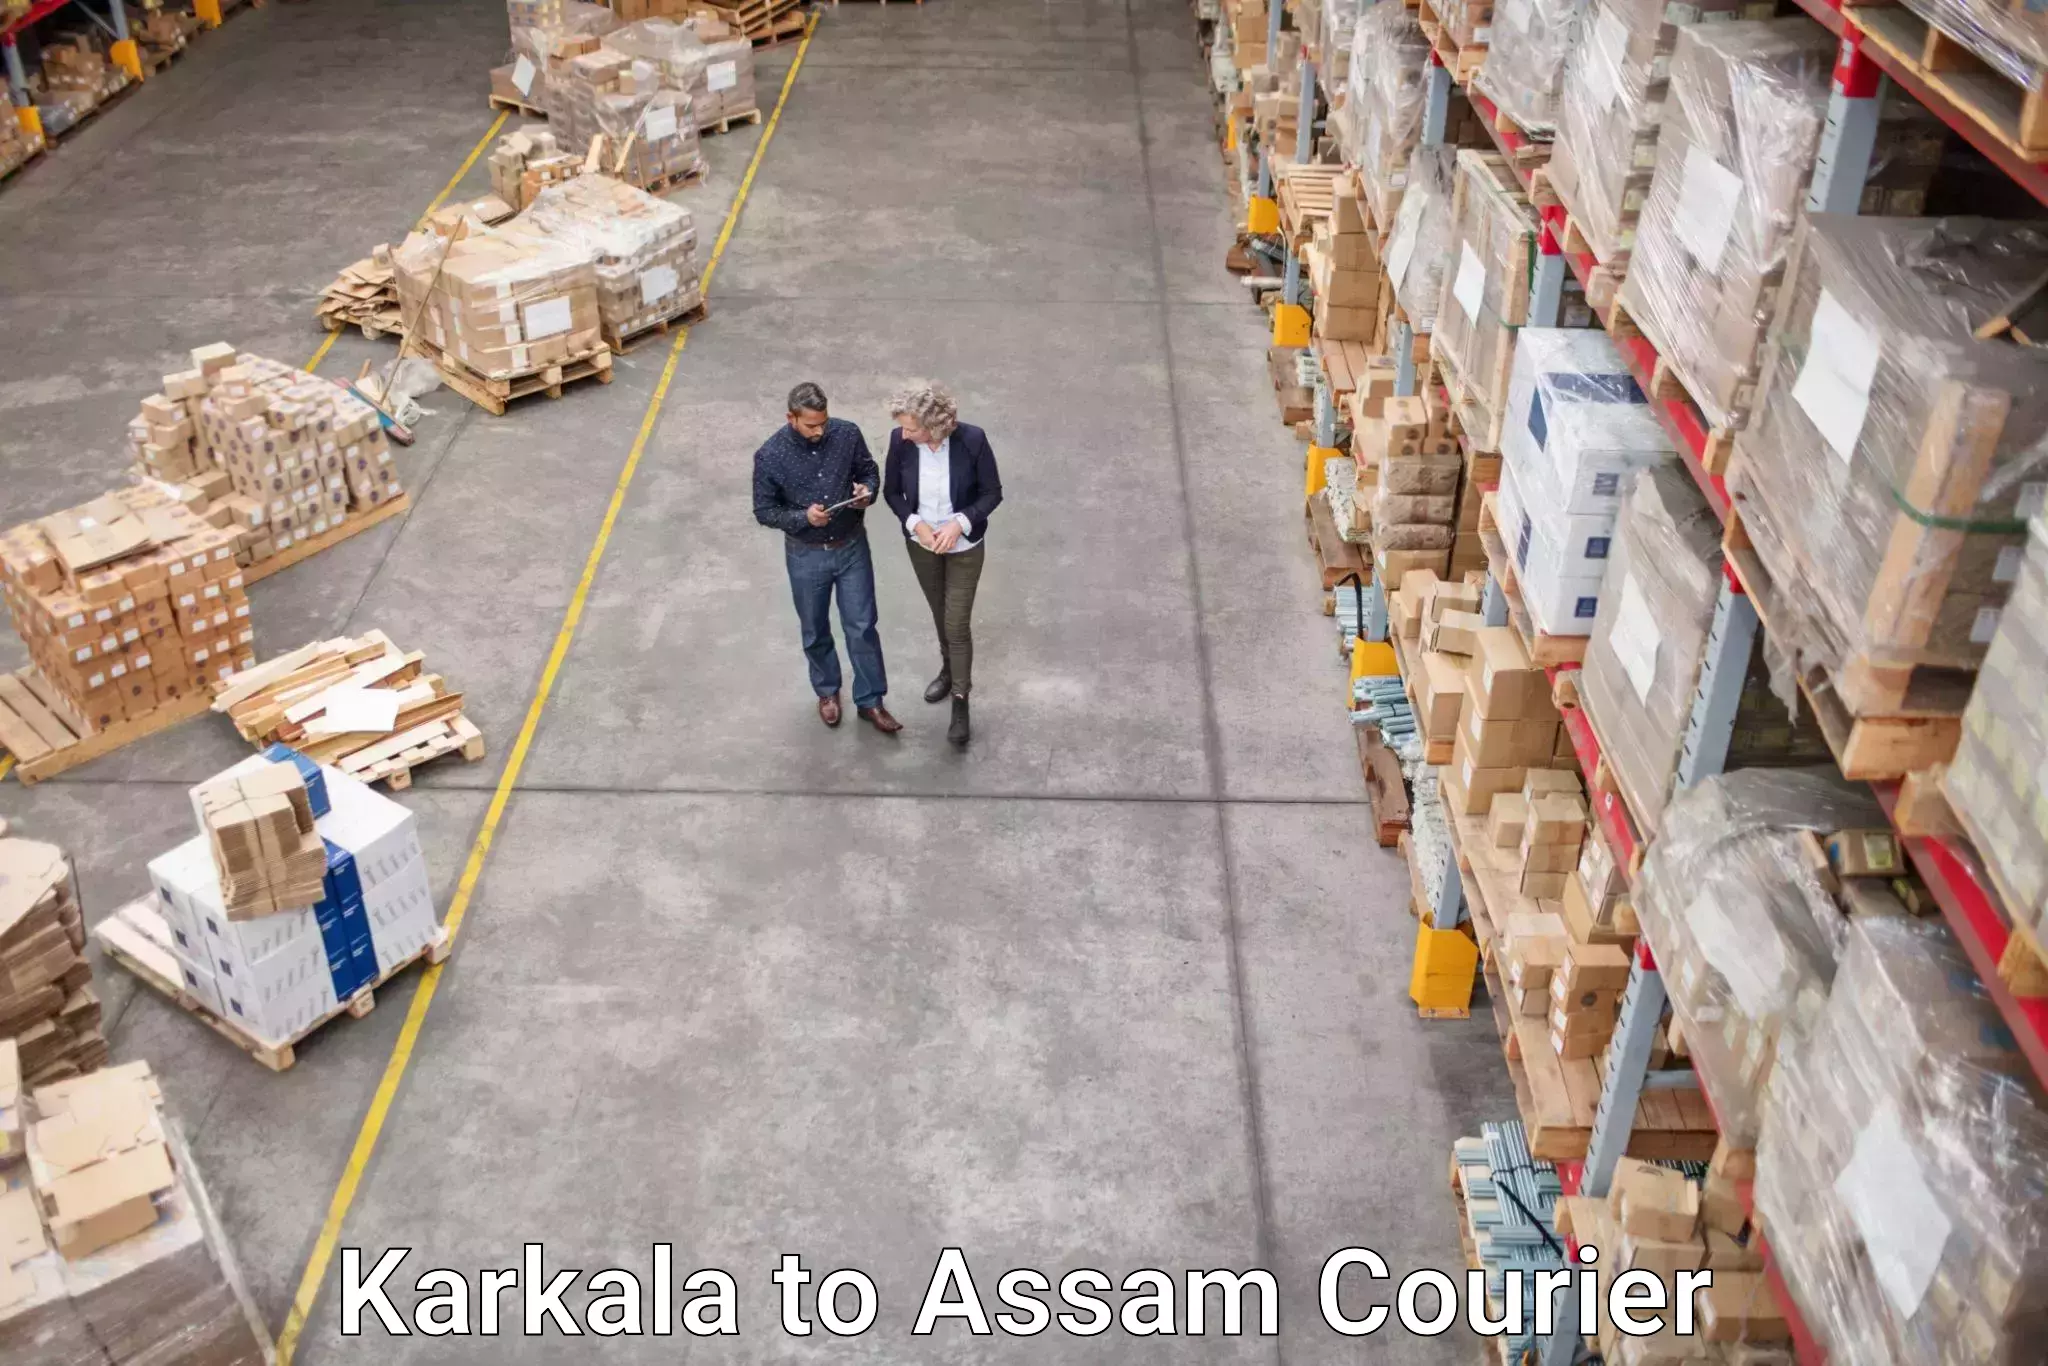 Digital courier platforms Karkala to Naharkatia